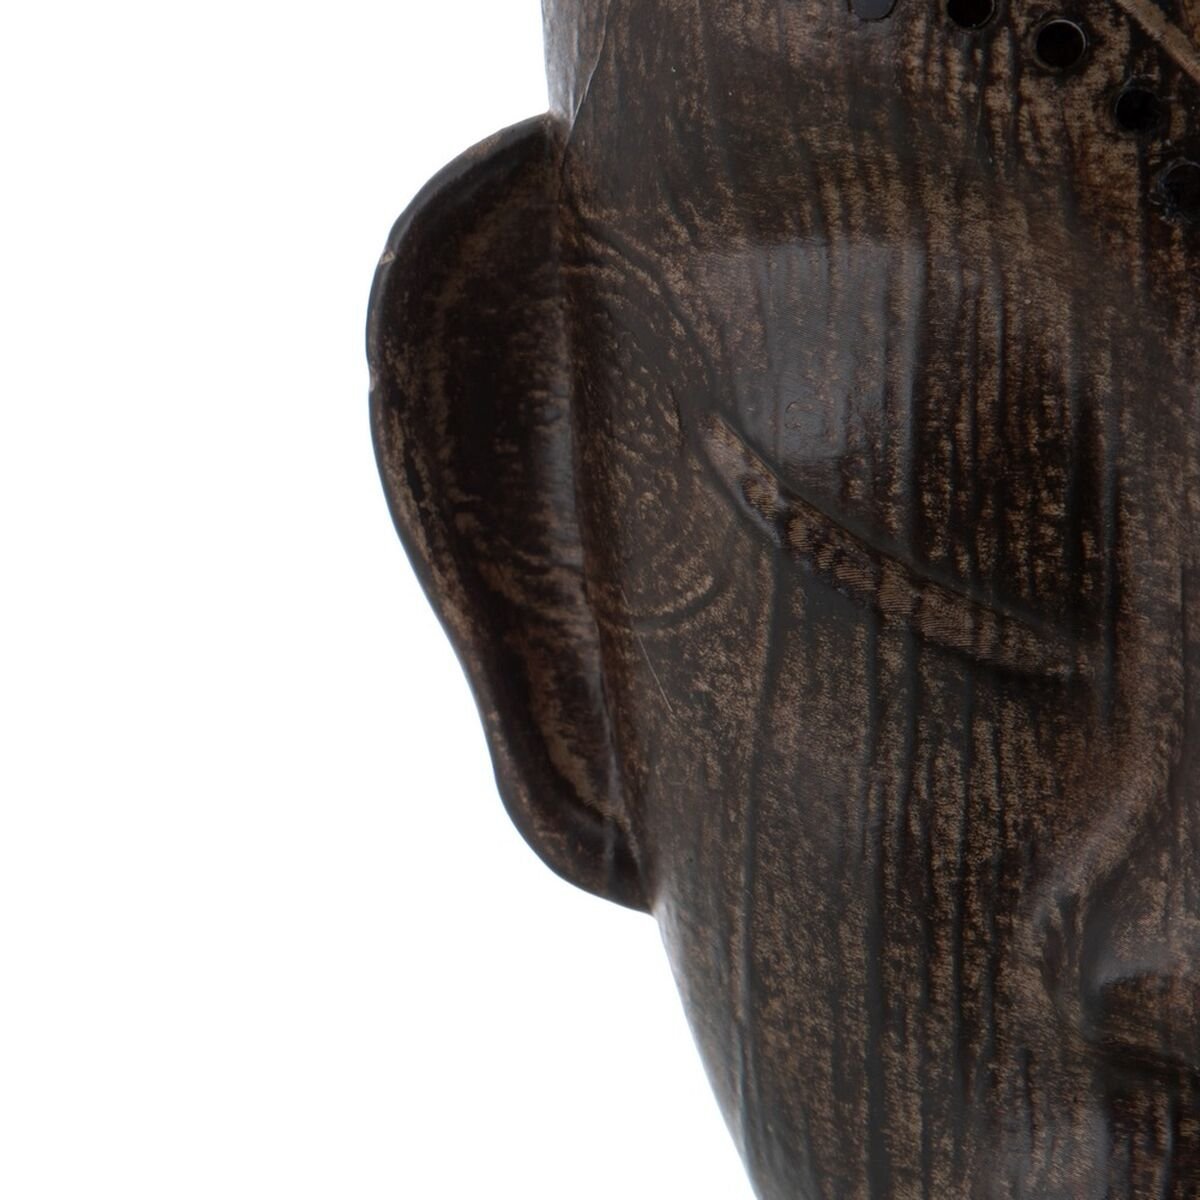 Glava afričkog čovjeka 17 x 16 x 46 cm